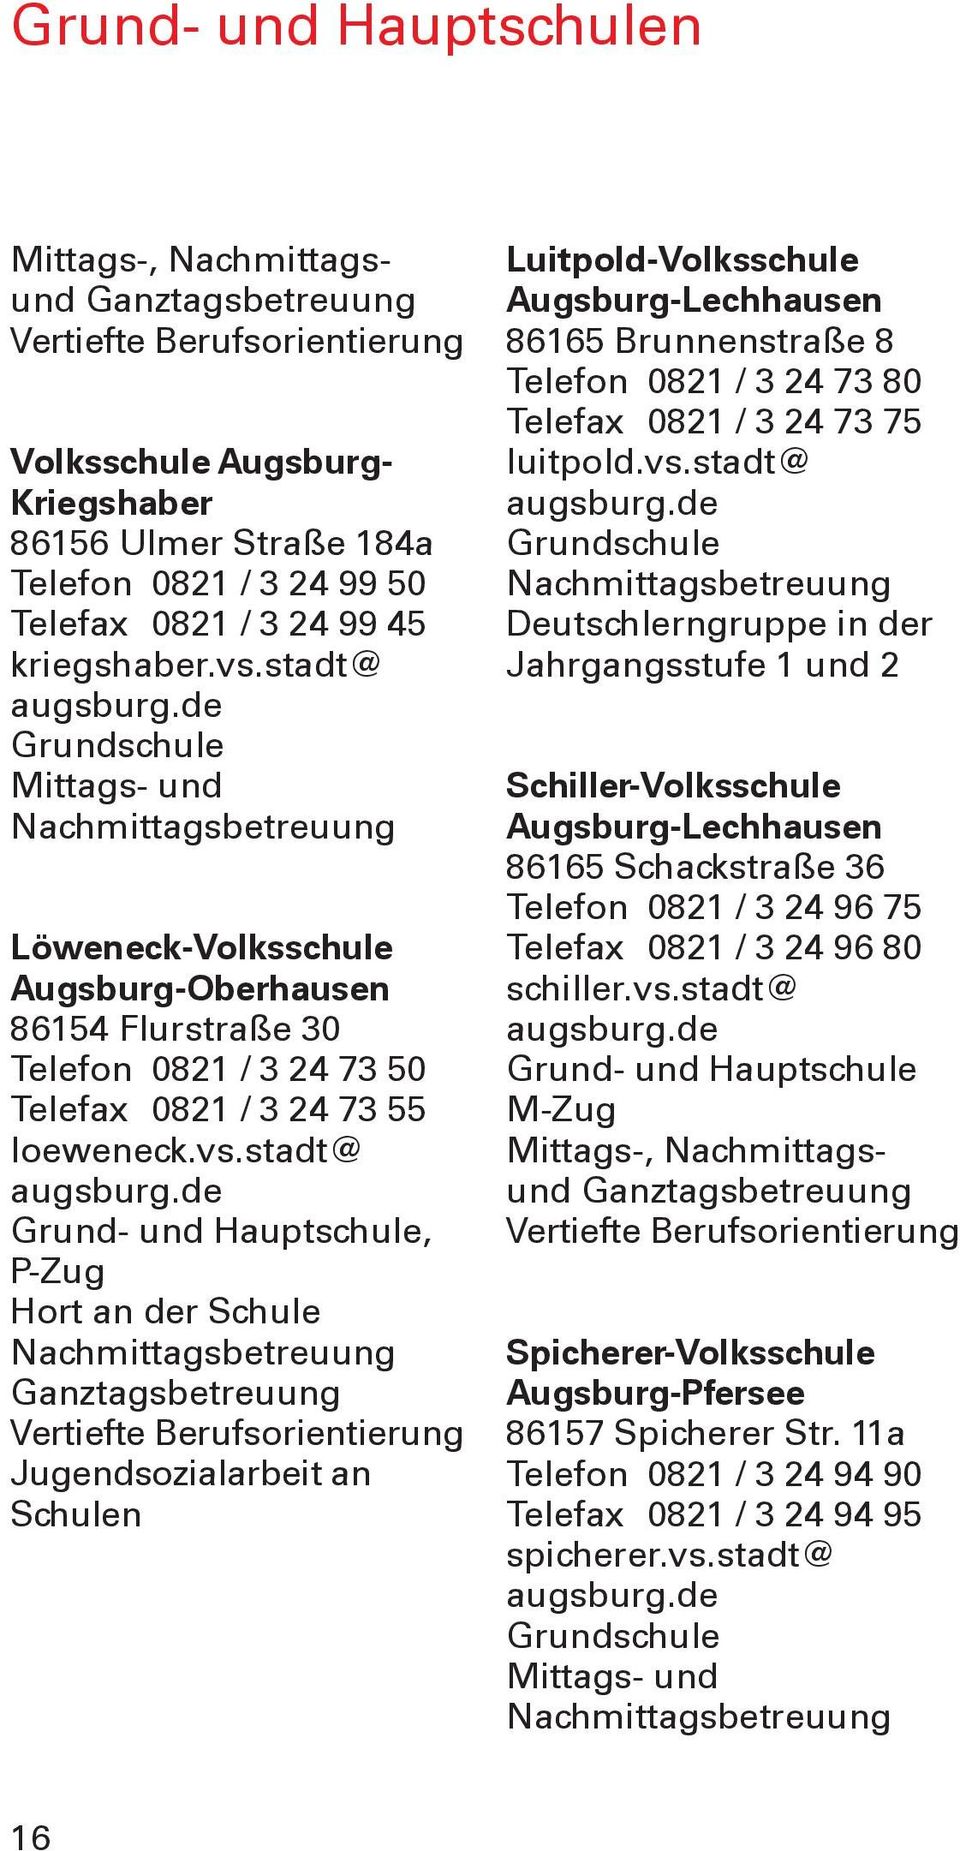 stadt@ Grundschule Mittags- und Nachmittagsbetreuung Löweneck-Volksschule Augsburg-Oberhausen 86154 Flurstraße 30 Telefon 0821 / 3 24 73 50 Telefax 0821 / 3 24 73 55 loeweneck.vs.